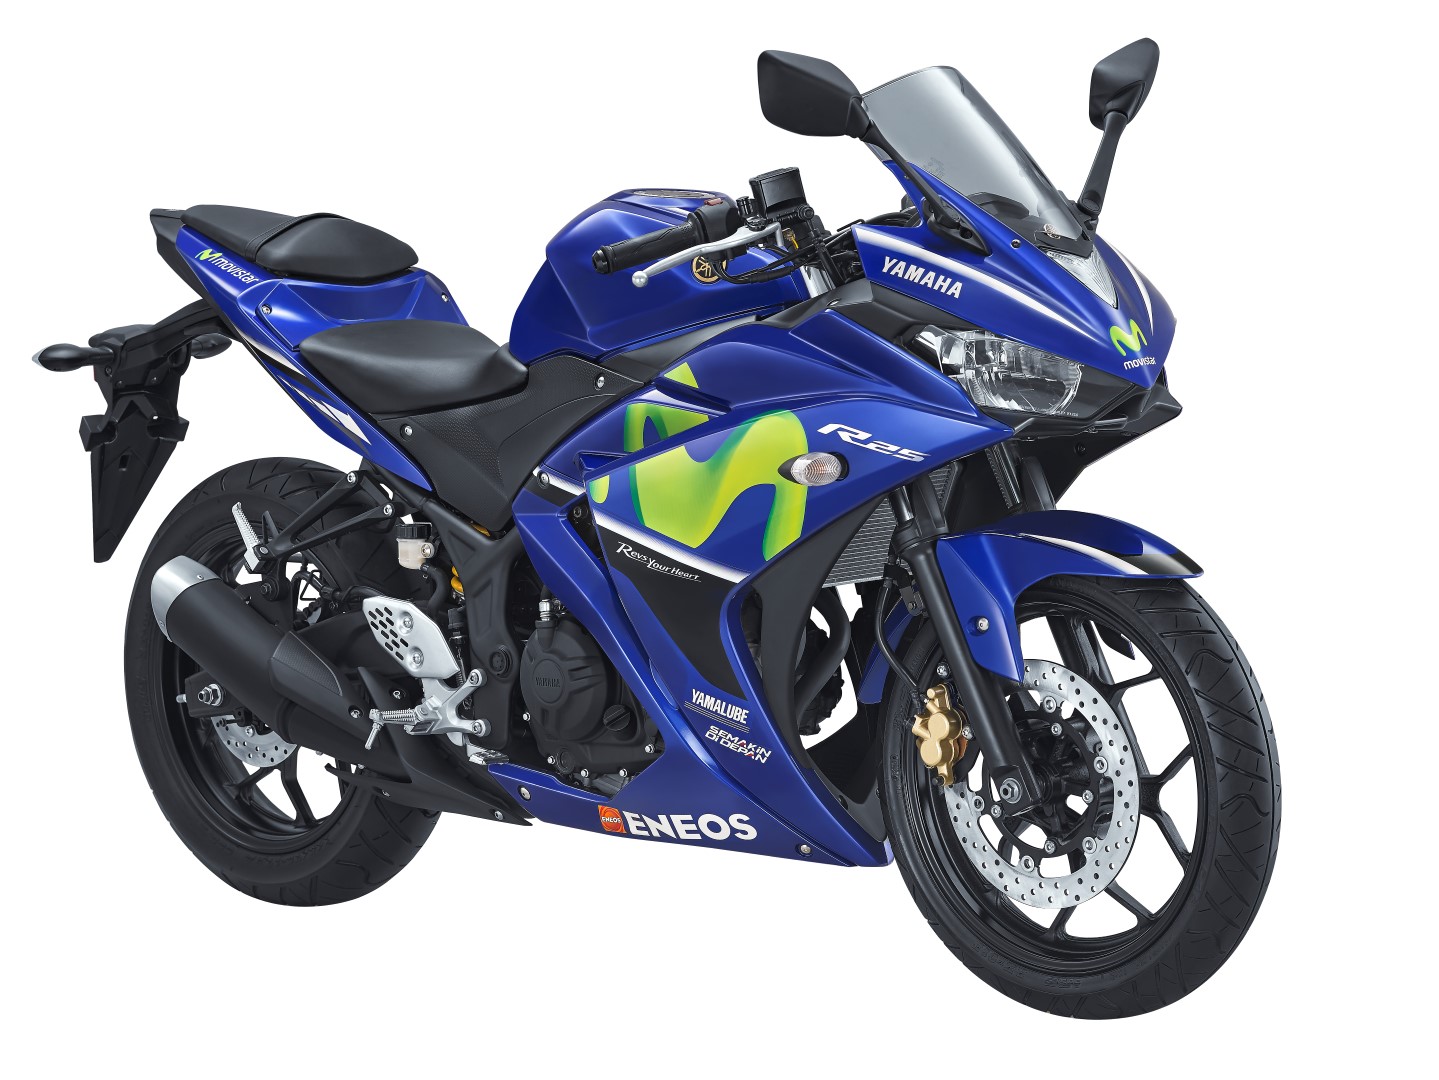 Yamaha Resmi Rilis Versi Liveri Movistar Dari New Vixion Aerox